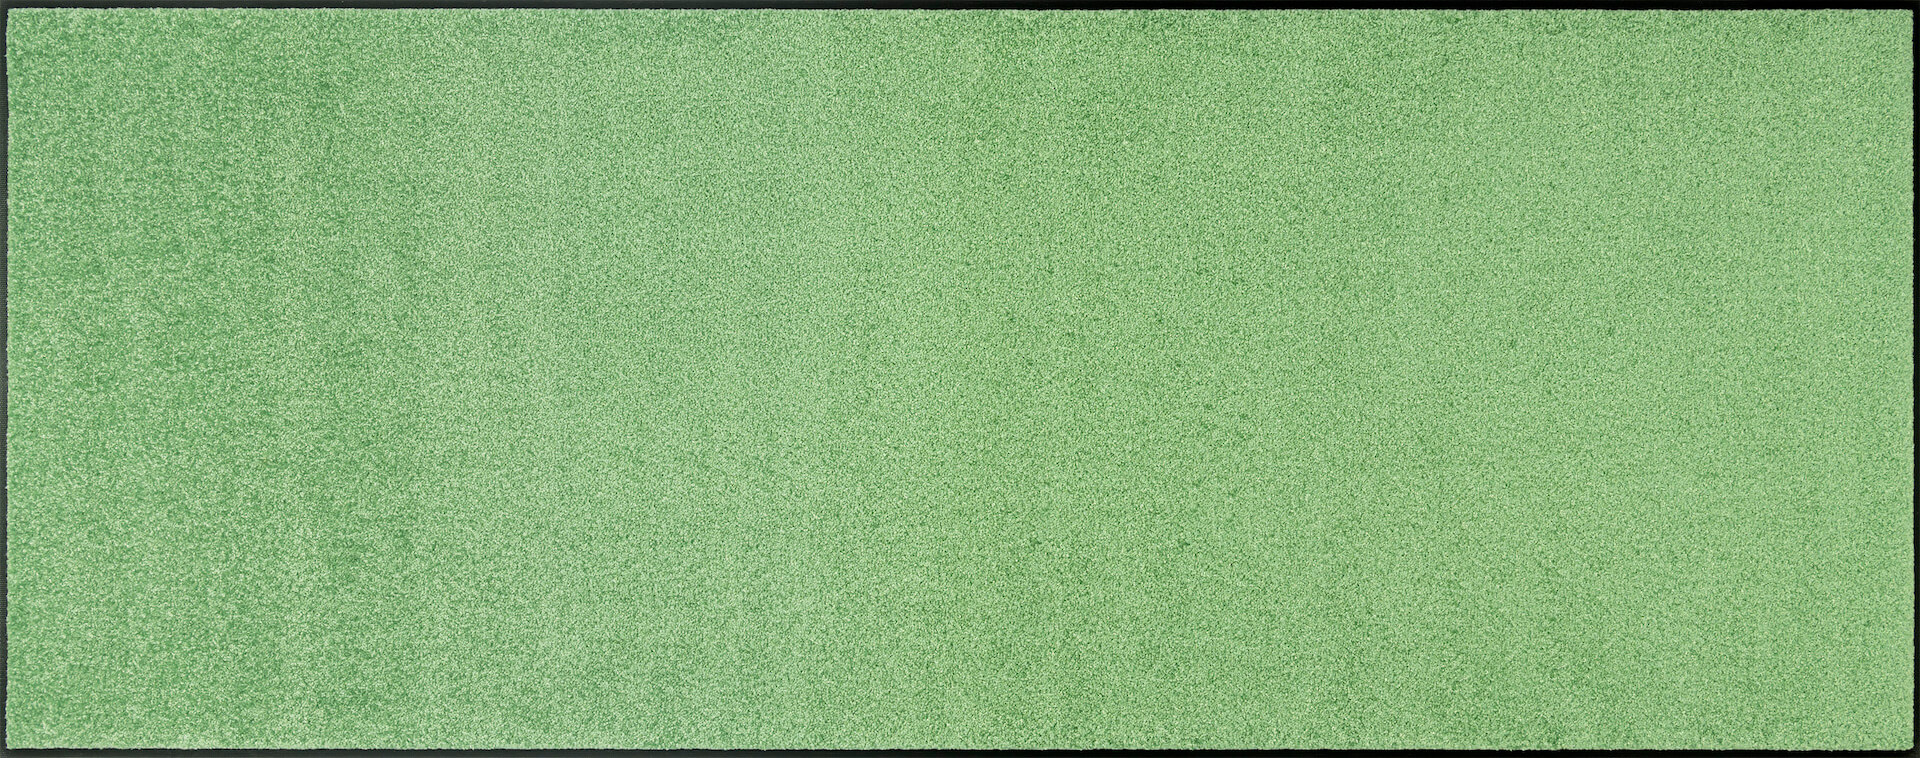 Fußmatte TC_Lime Lagoon, Monocolour, 075 x 190 cm, Draufsicht